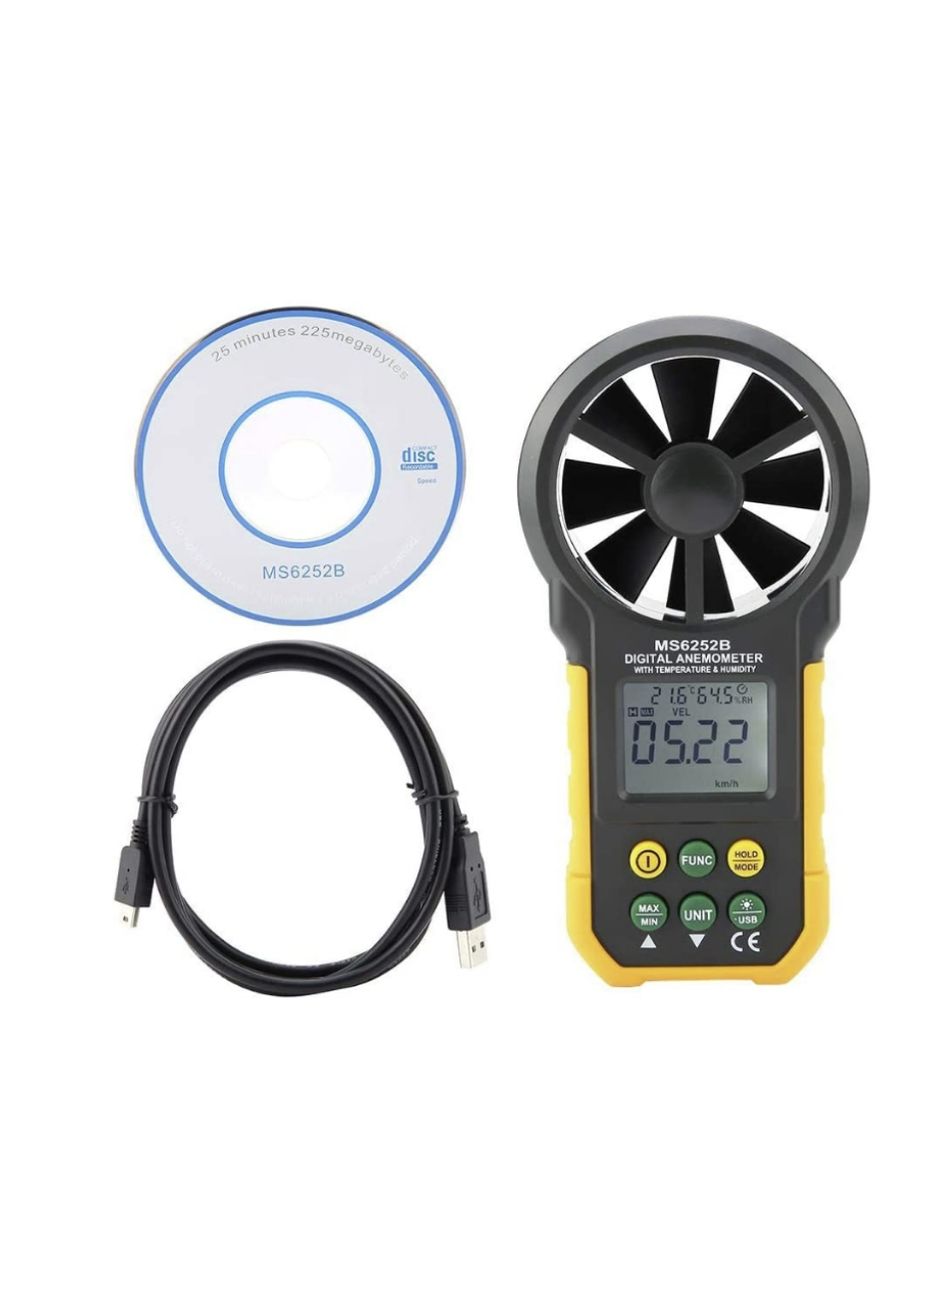 Handheld Digital Anemometer Wind Speed Meter